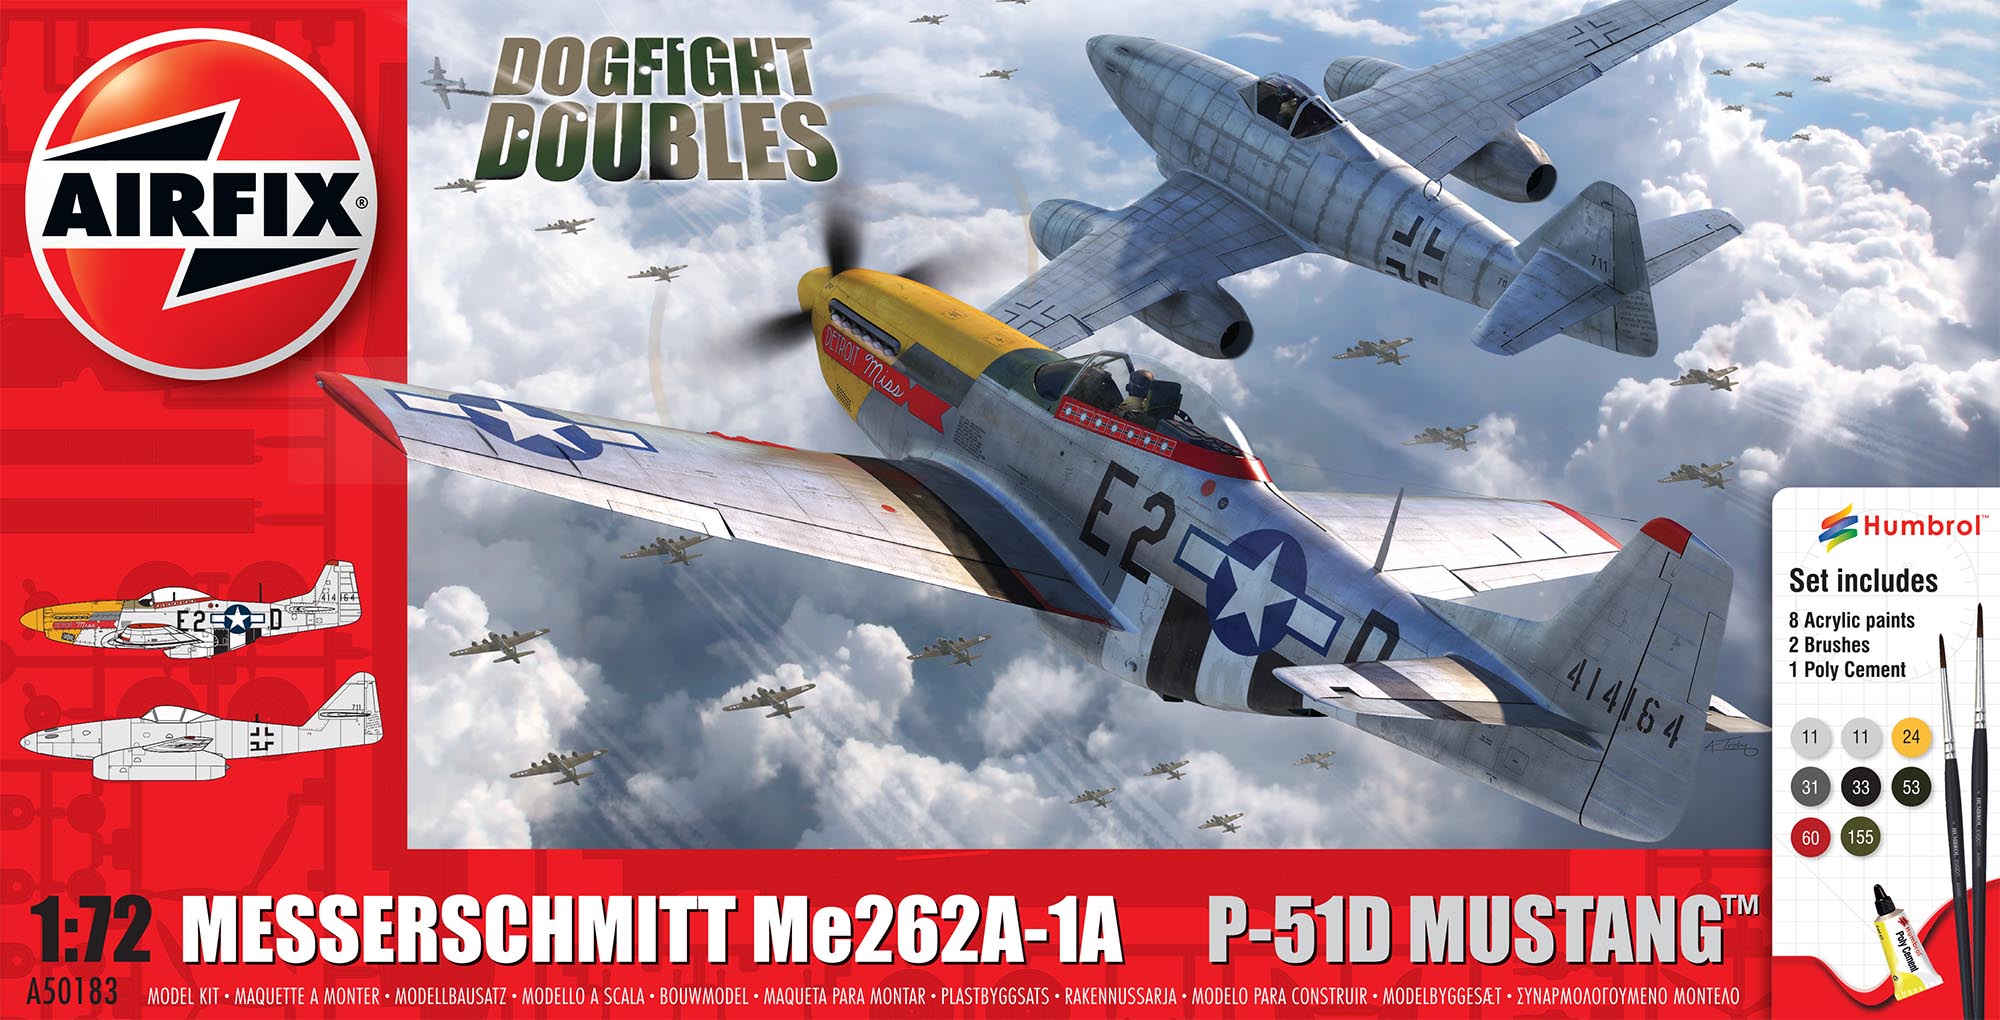 Messerschmitt Me262 & P-51D Mustang Dogfight Double